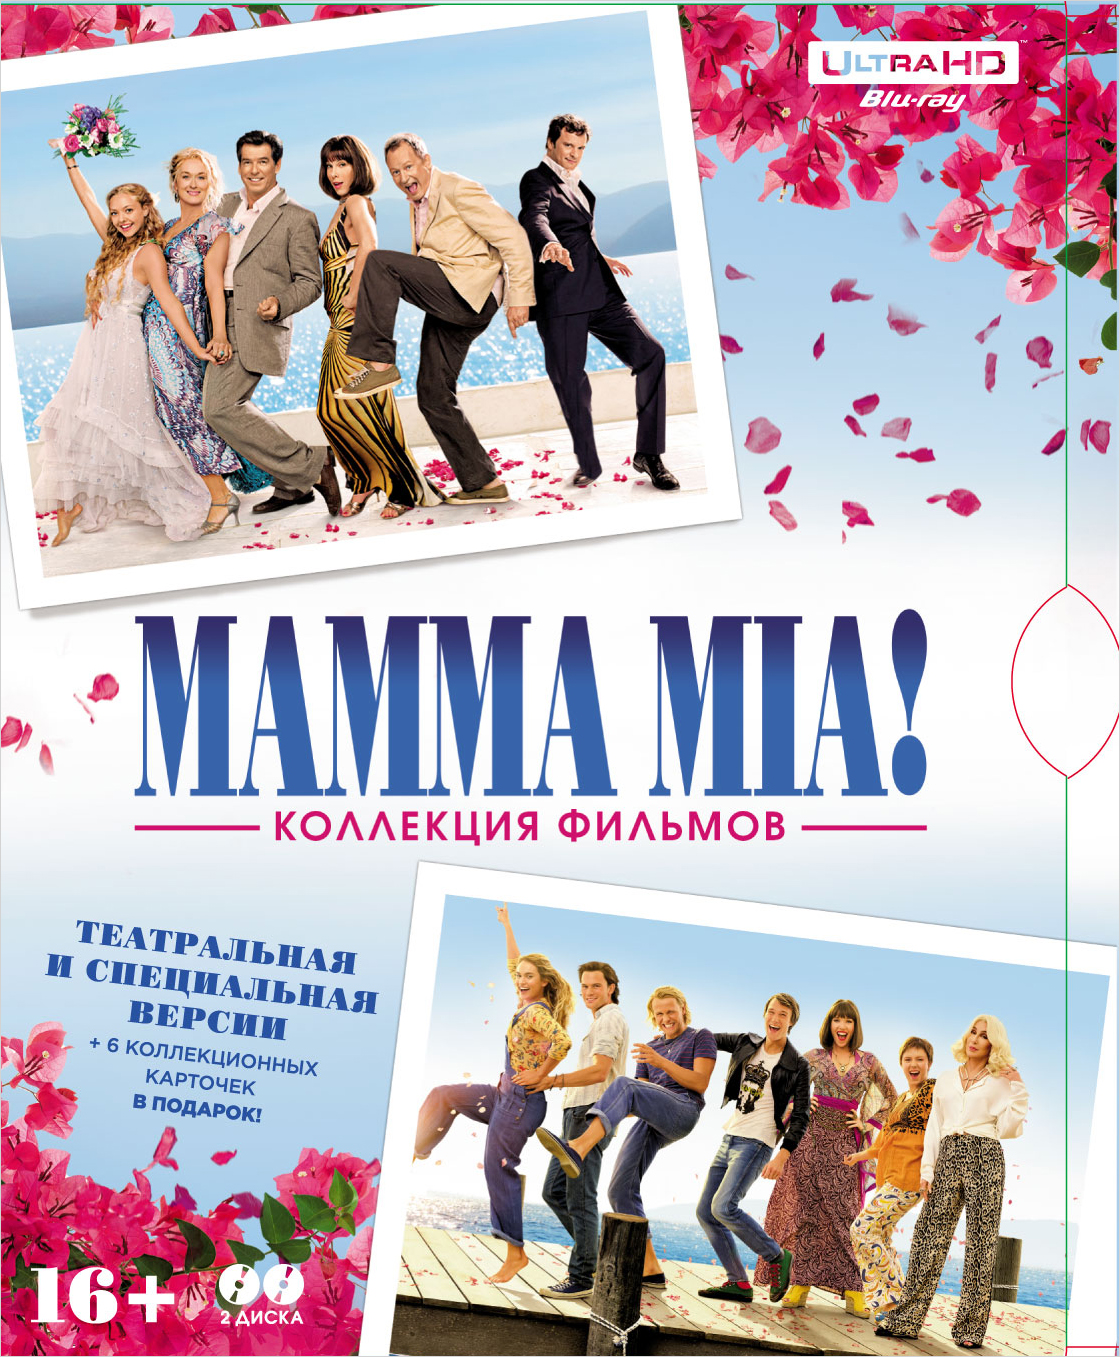 MAMMA MIA! Дилогия (Blu-ray 4K Ultra HD) (2 Blu-ray) цена и фото